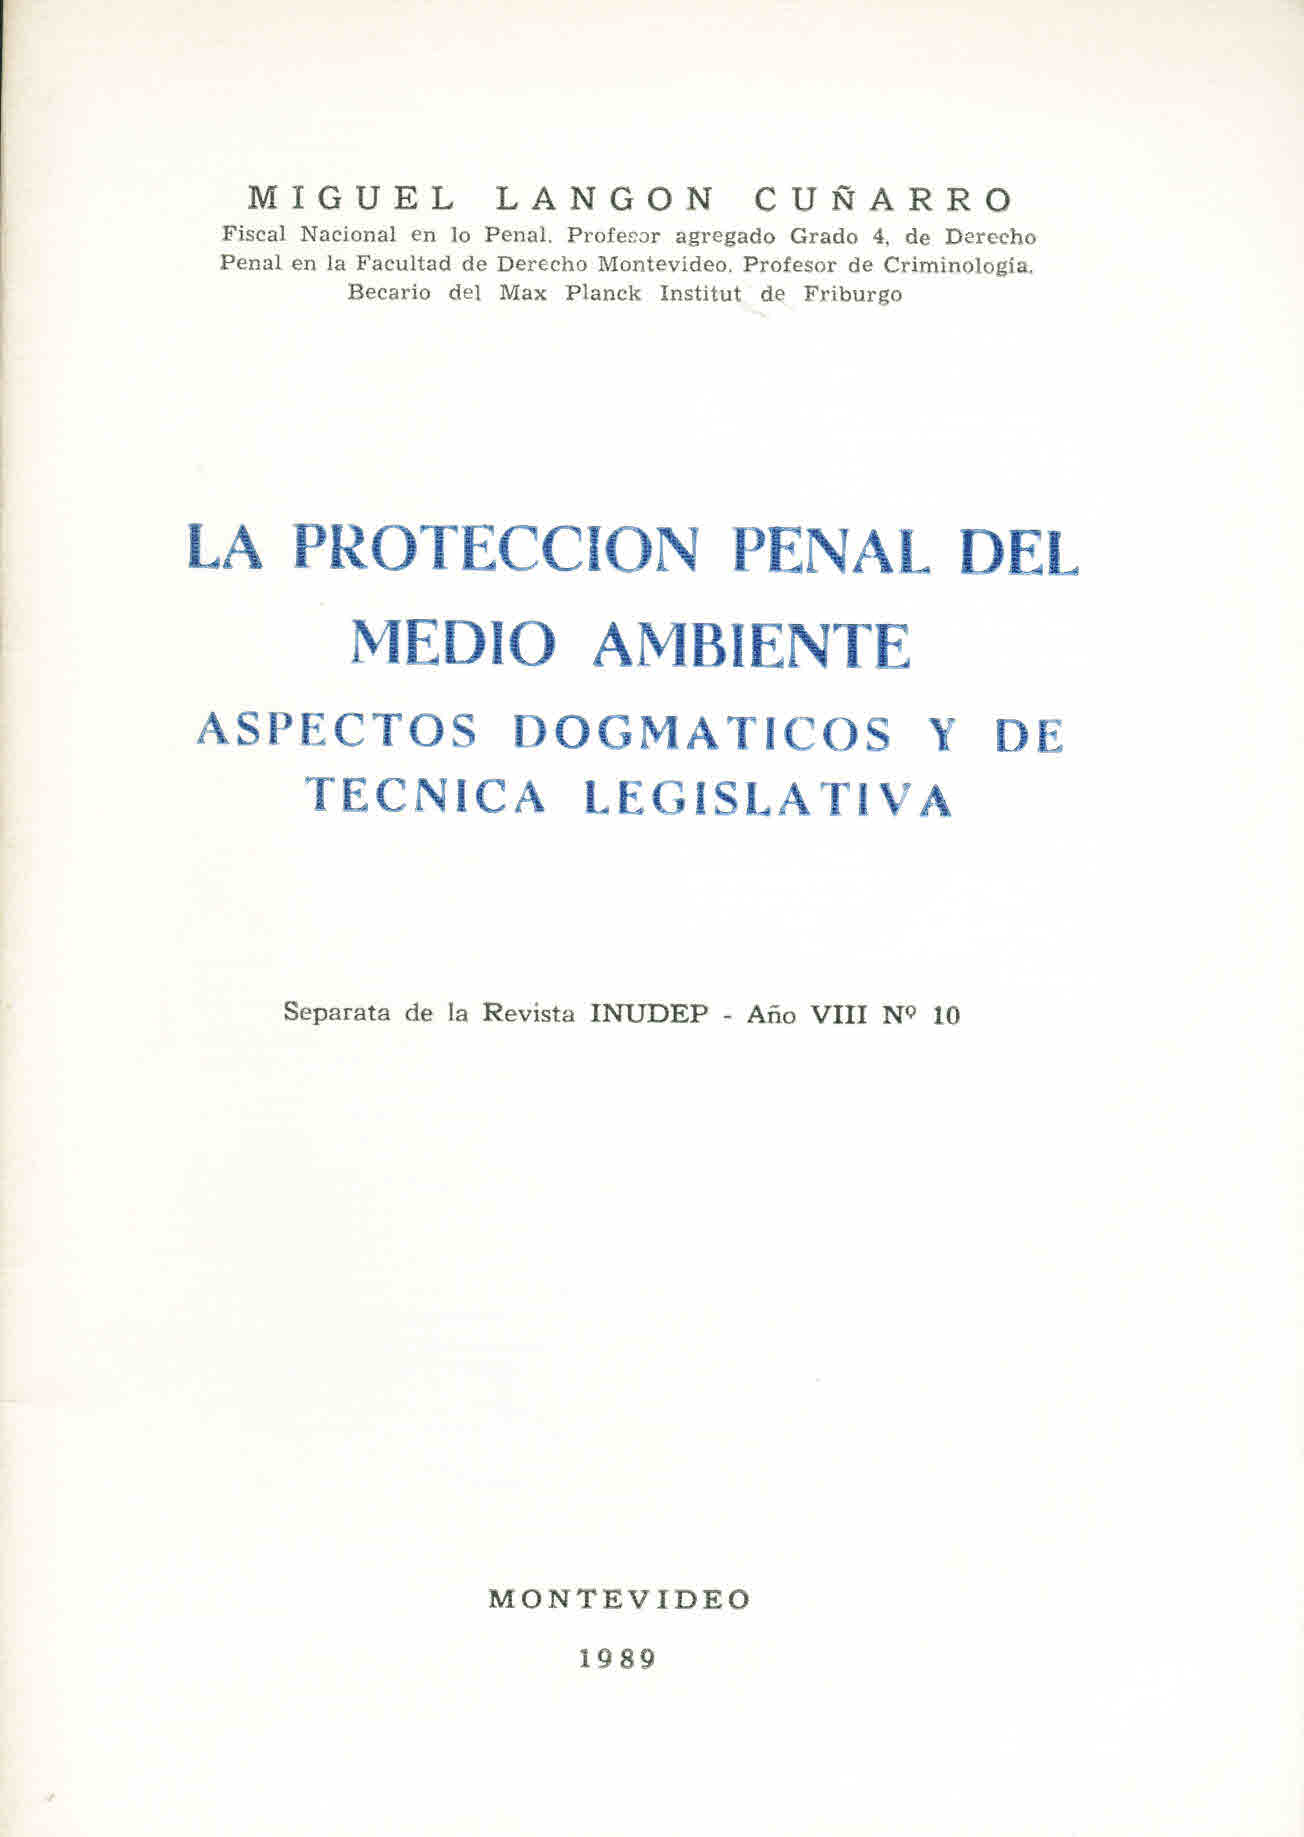 La protección penal del Medio Ambiente. Aspectos dogmáticos y de técnica legislativa